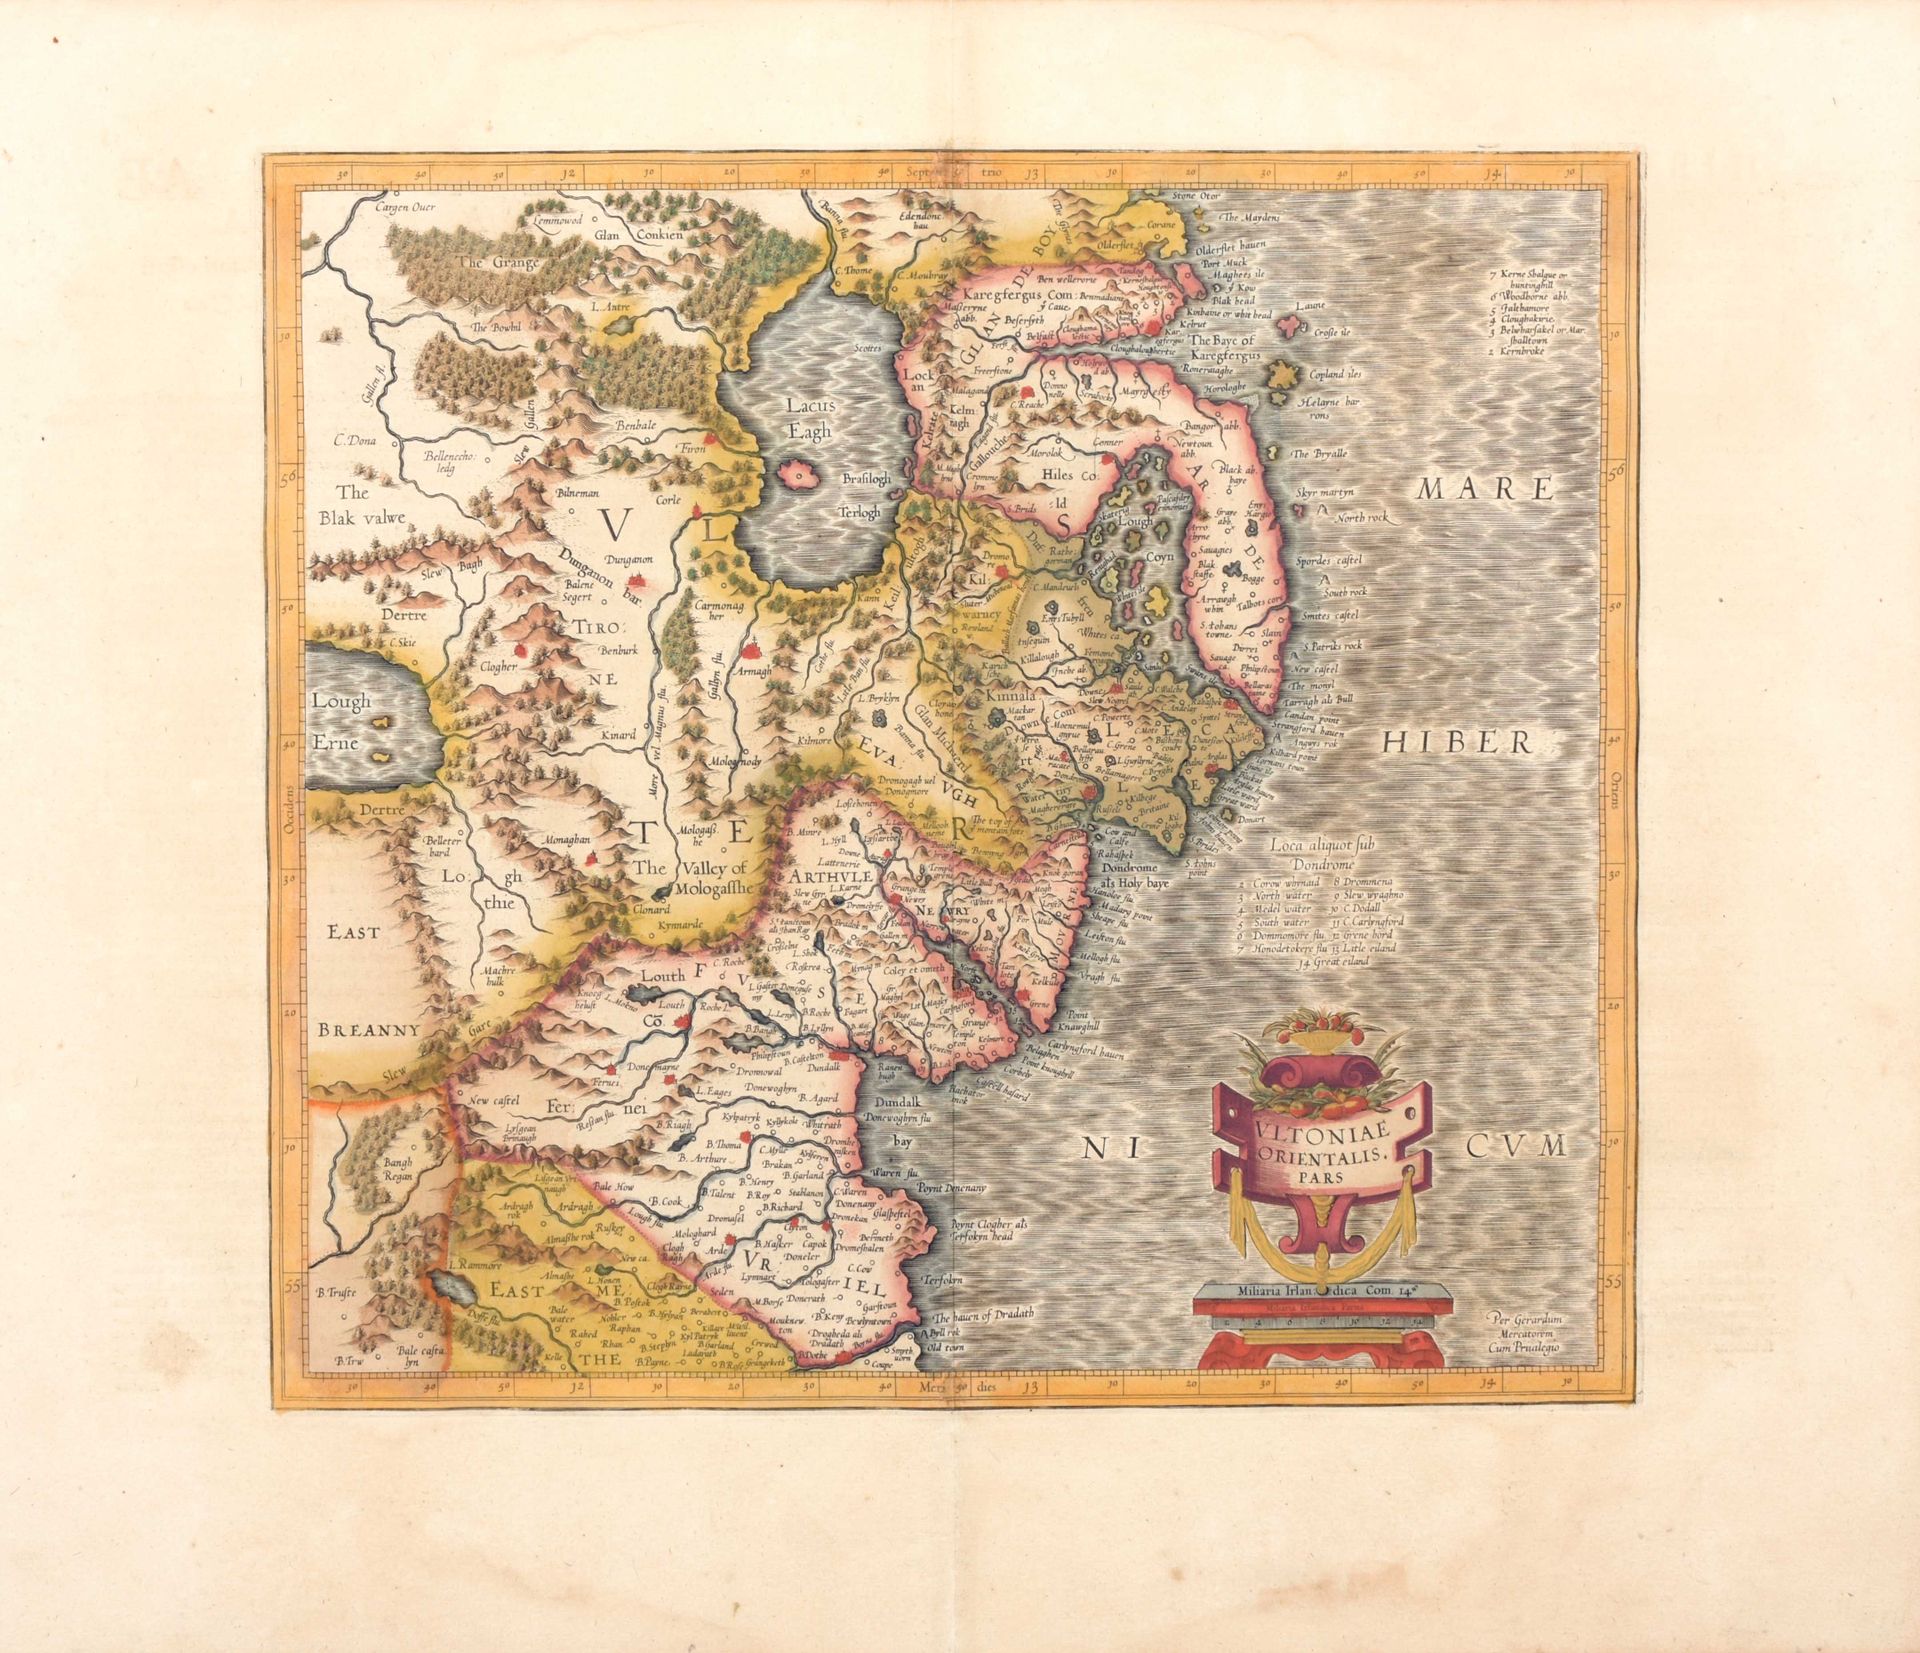 [NORTHERN IRELAND] Ultoniae Orientalis Pars

Orig. Handcol. Map (35 x 38 cm) by &hellip;